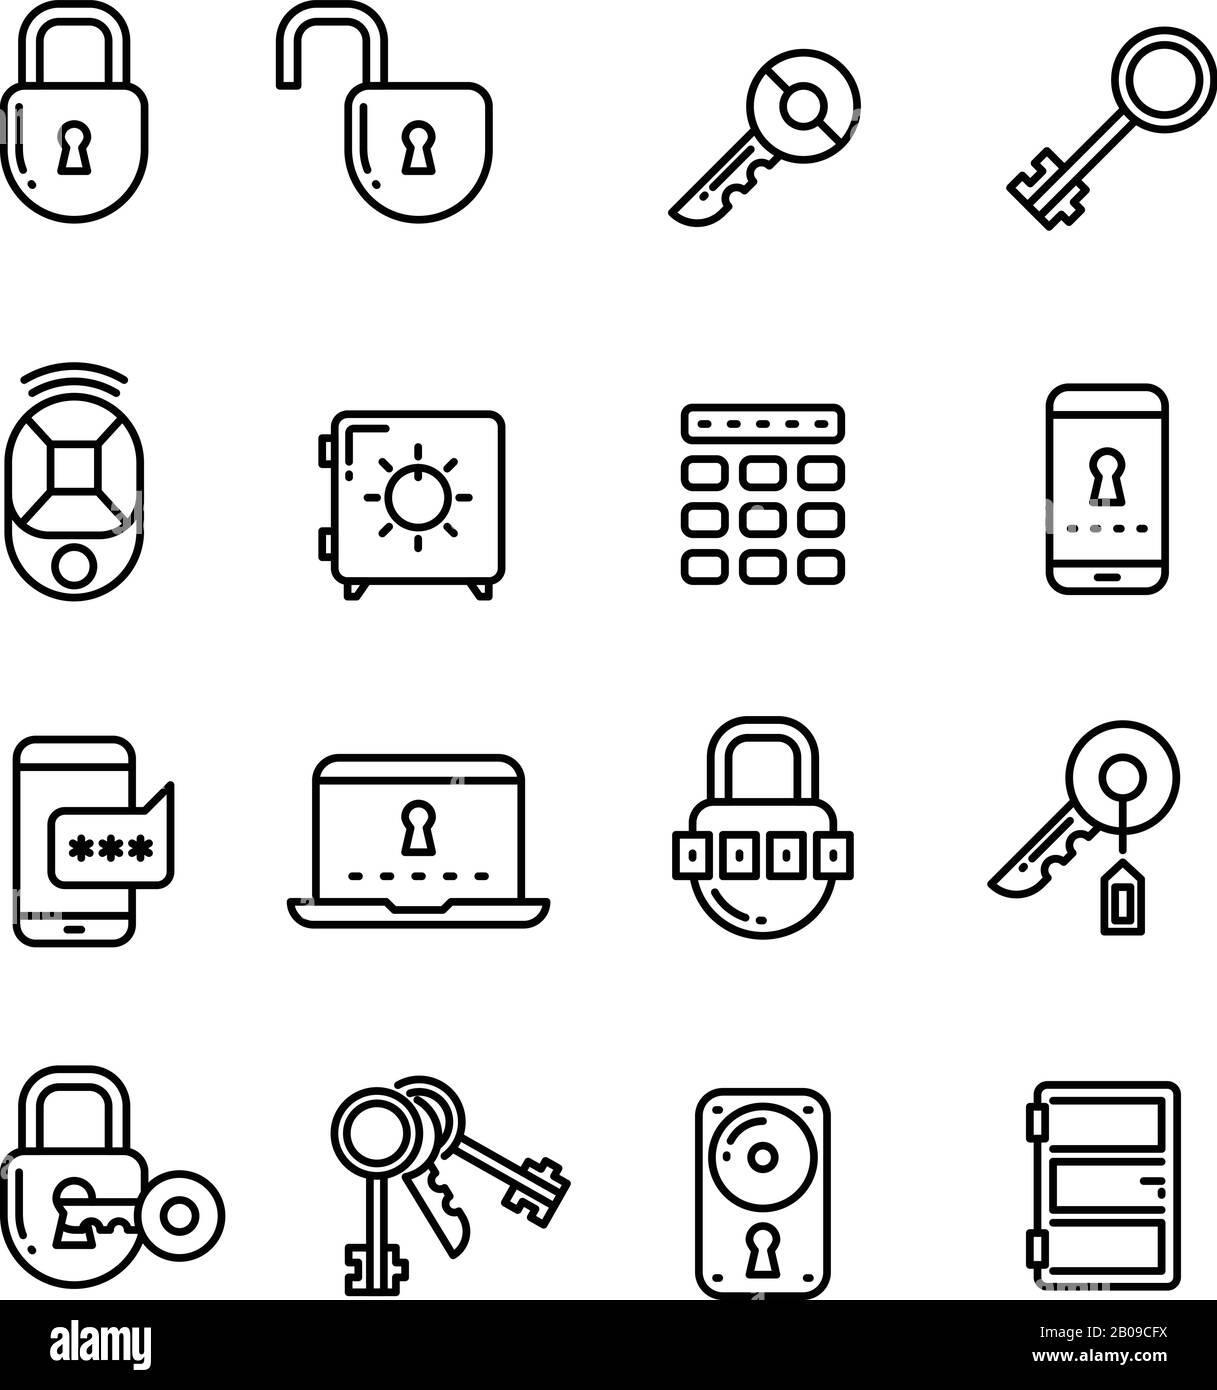 Chiave, serratura, lucchetto, cassaforte, porta, icone vettoriali di sicurezza a linea sottile. Raccolta di icone di sicurezza lineari, illustrazione di blocco e codice per la sicurezza Illustrazione Vettoriale